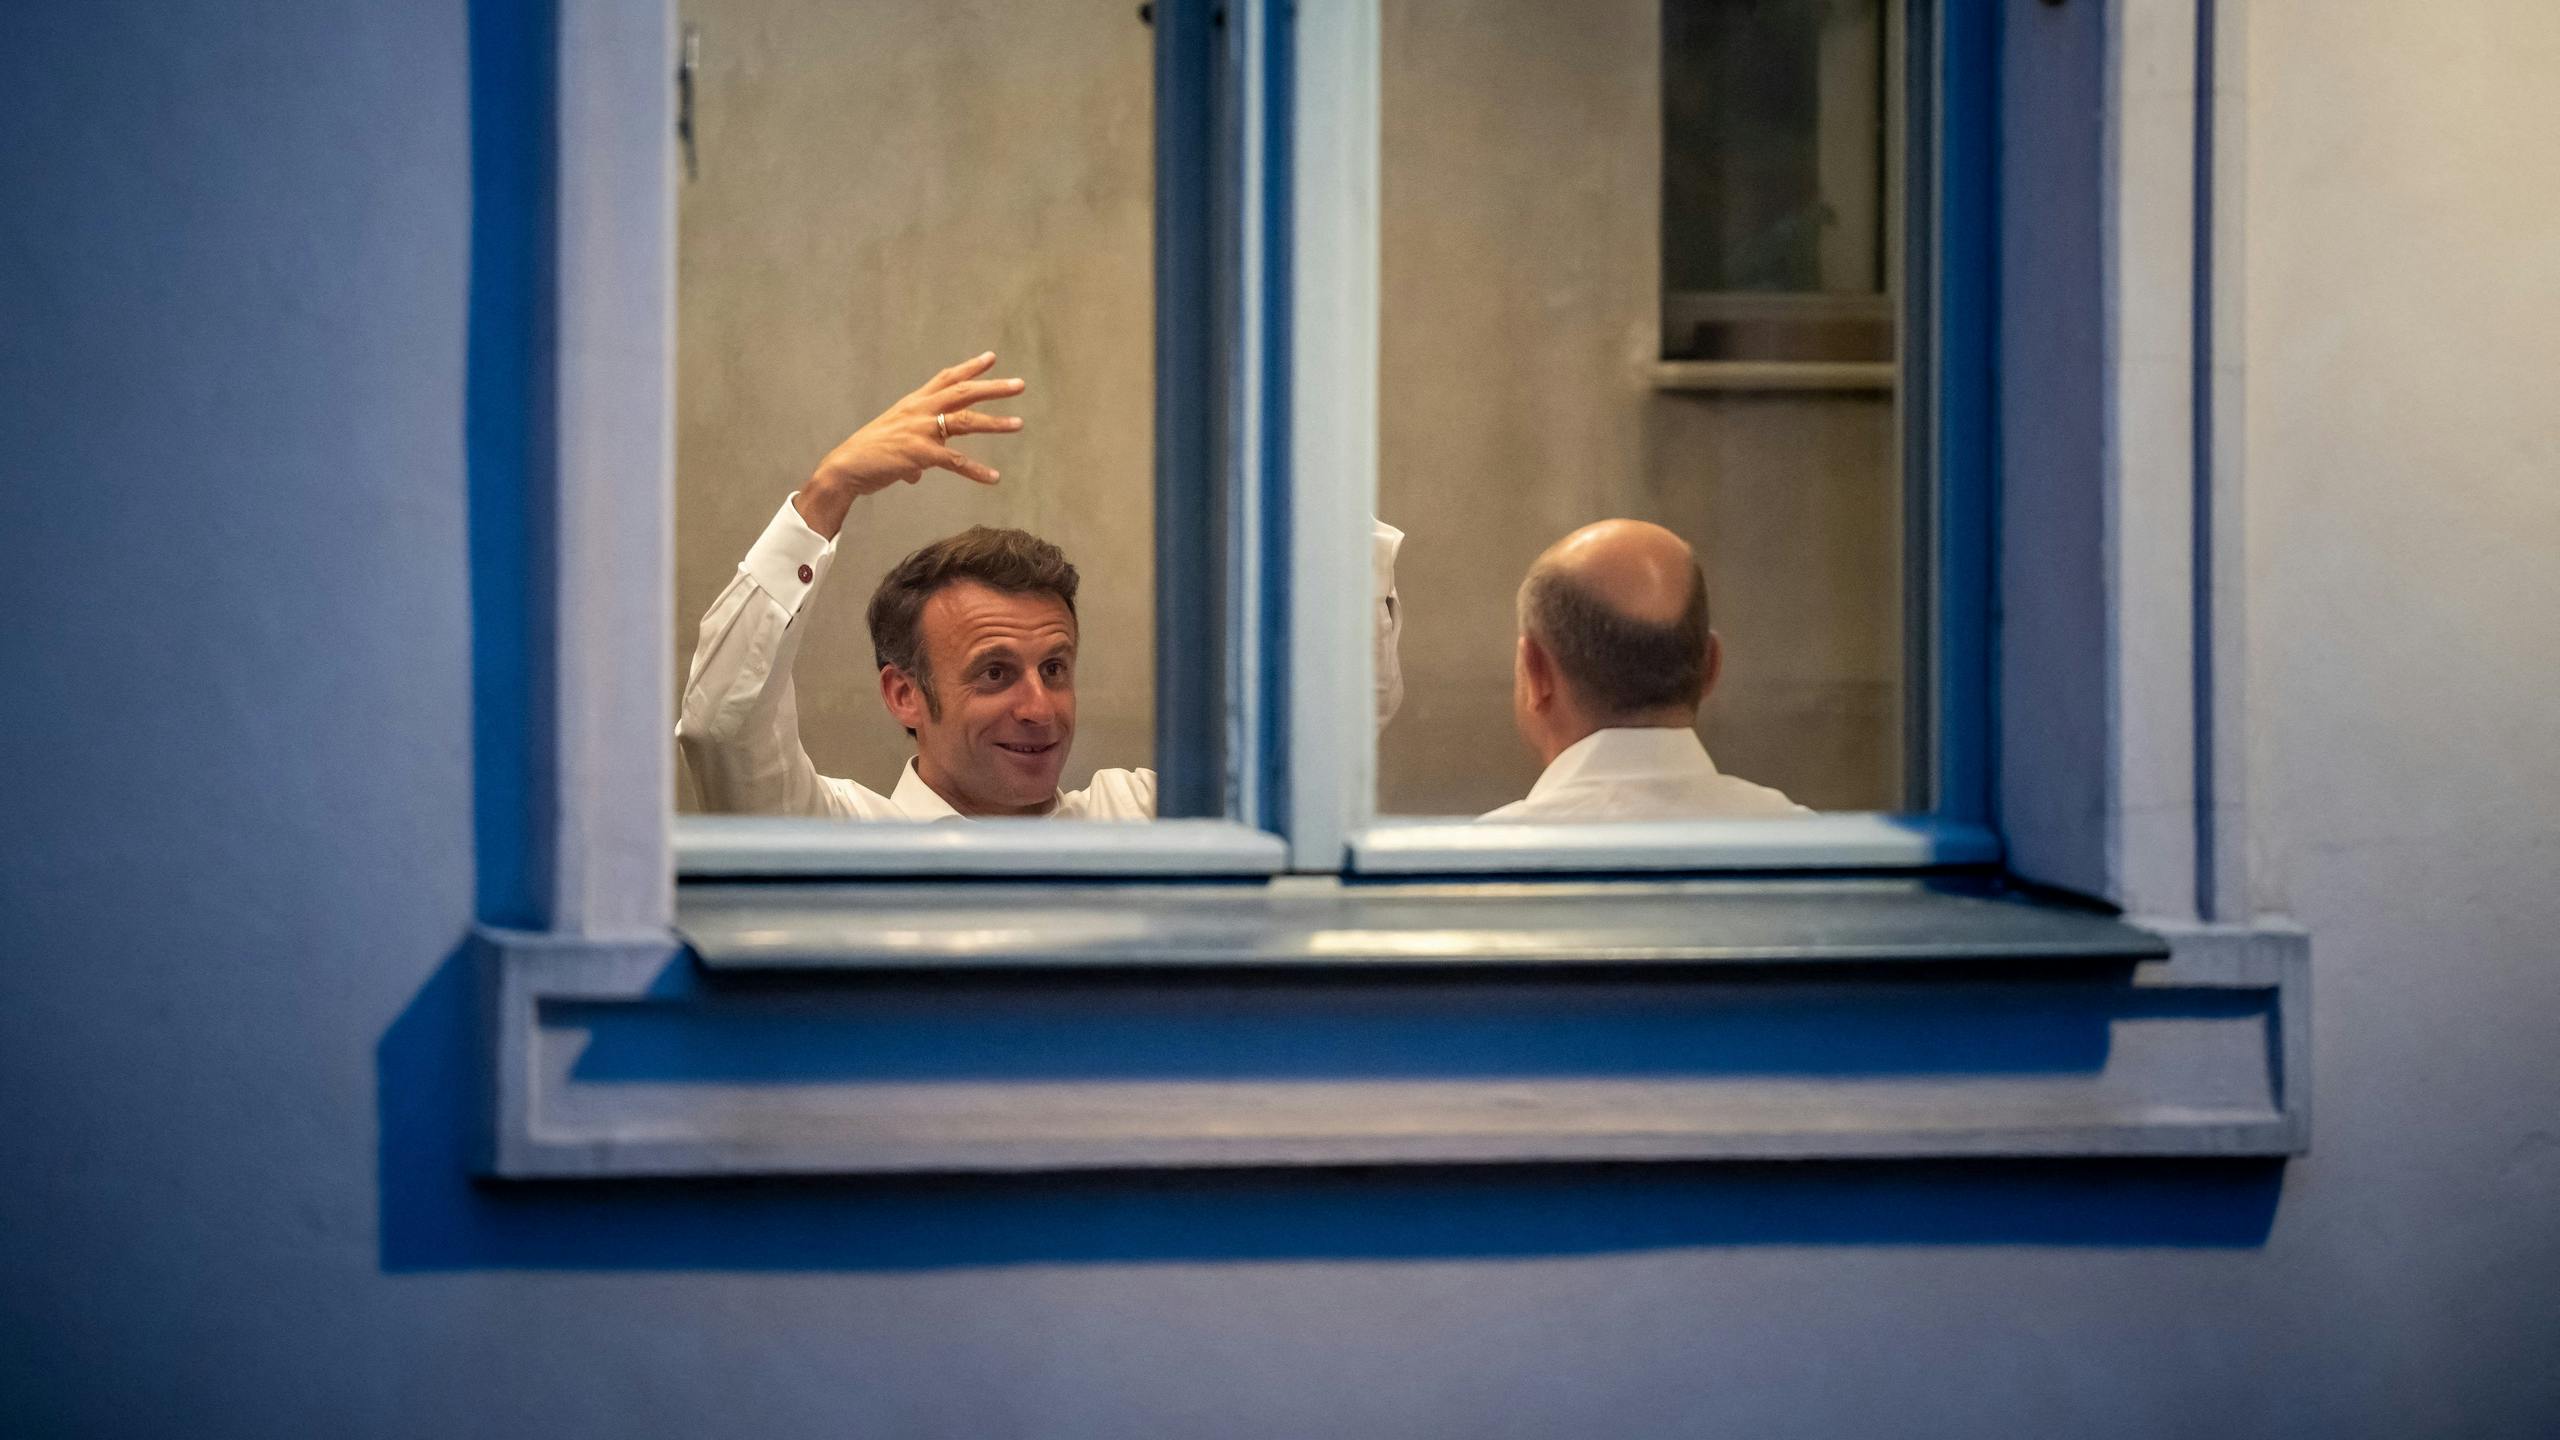 Frankrijk en Duitsland hernieuwen relatie tijdens intiem dinertje Macron en Scholz